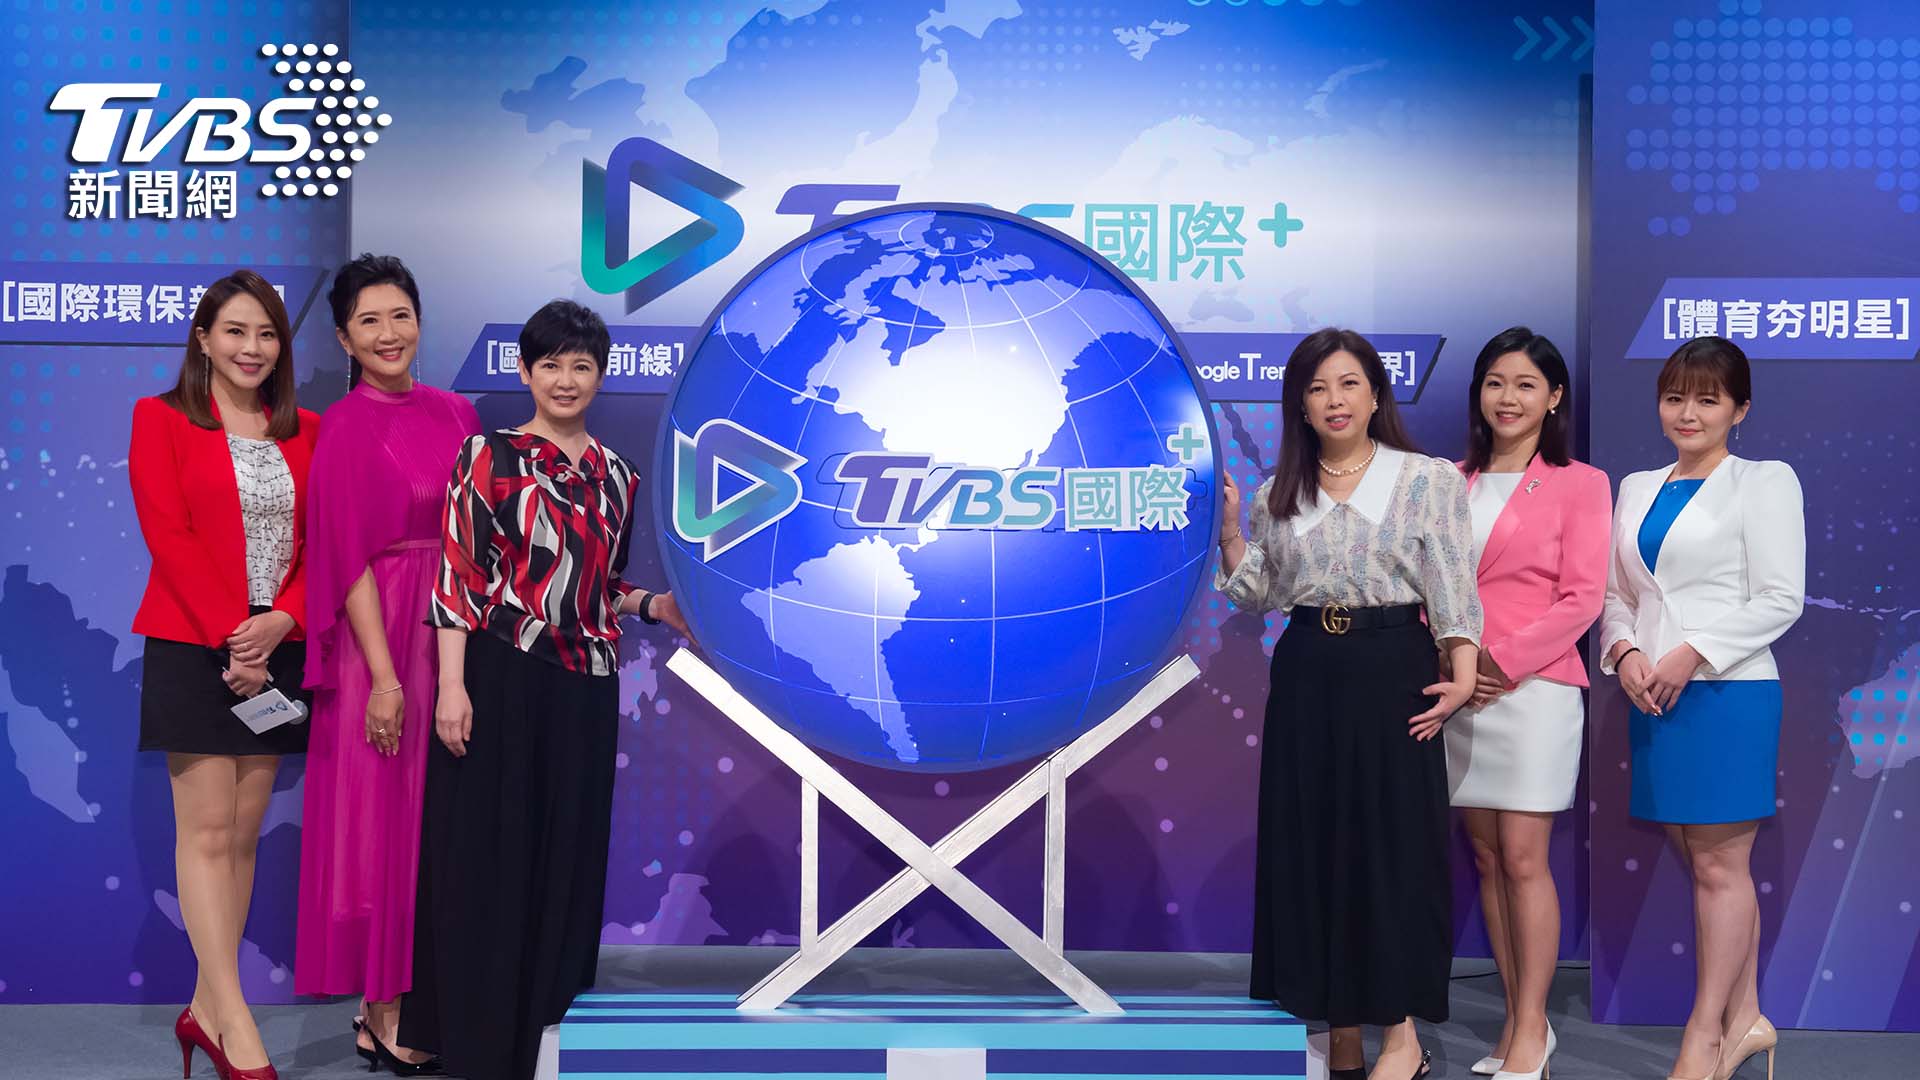 《TVBS國際+》線上記者會 國際新聞IP亮相 APP 行動跨域 掌握全球視野│TVBS新聞網 – TVBS